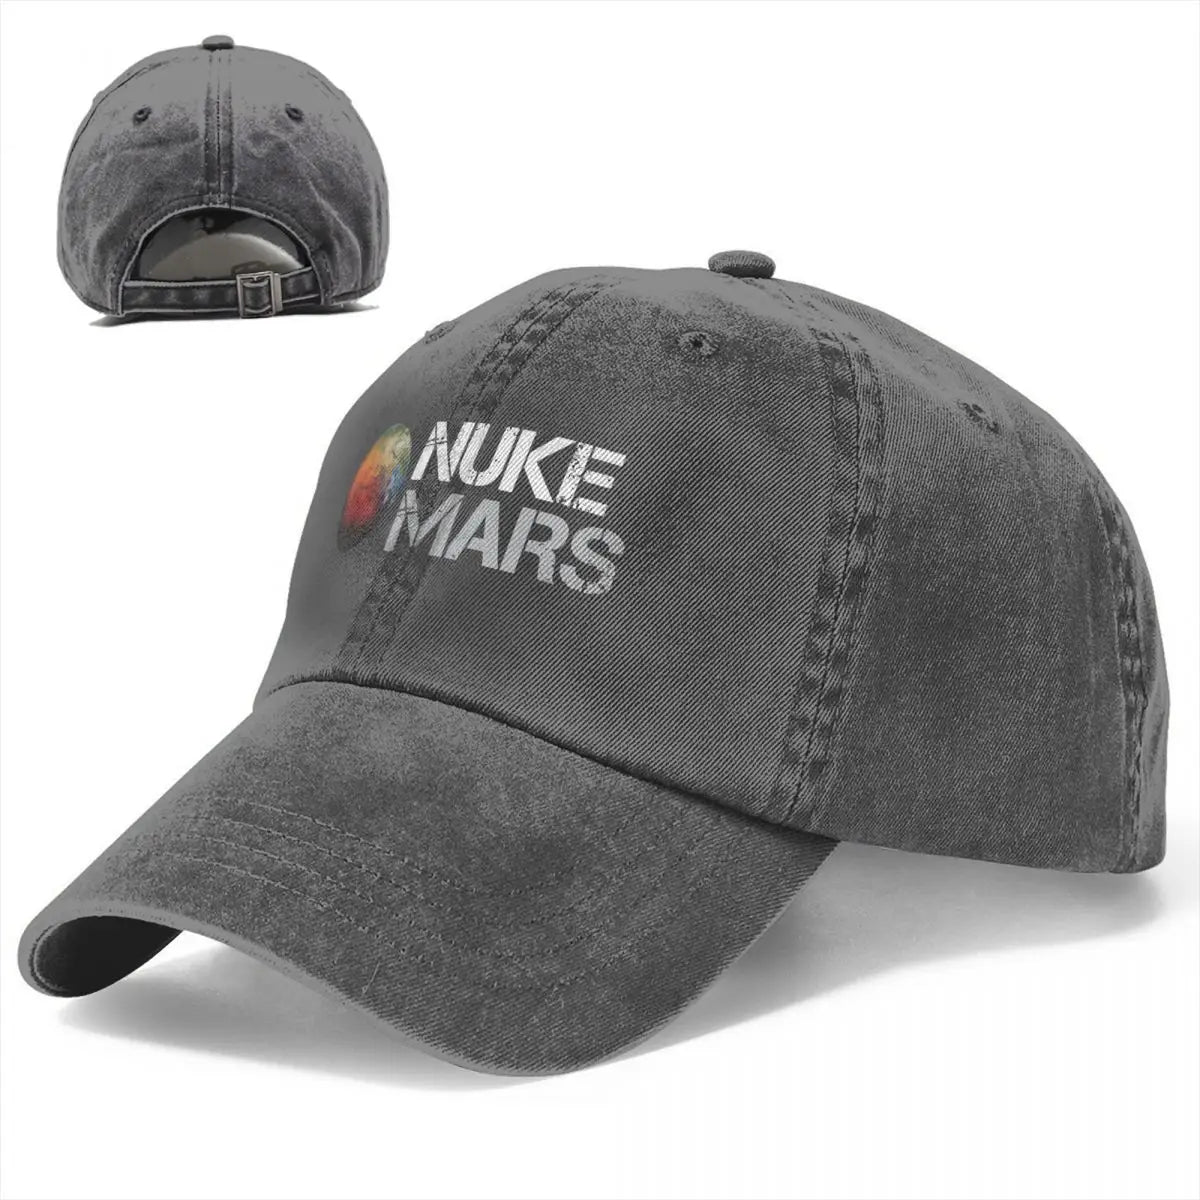 2022 novo hip hop lavado nuke mars espaço marte lua rabo de cavalo boné de beisebol das mulheres dos homens verão outono ajustável chapéu boné chapéus